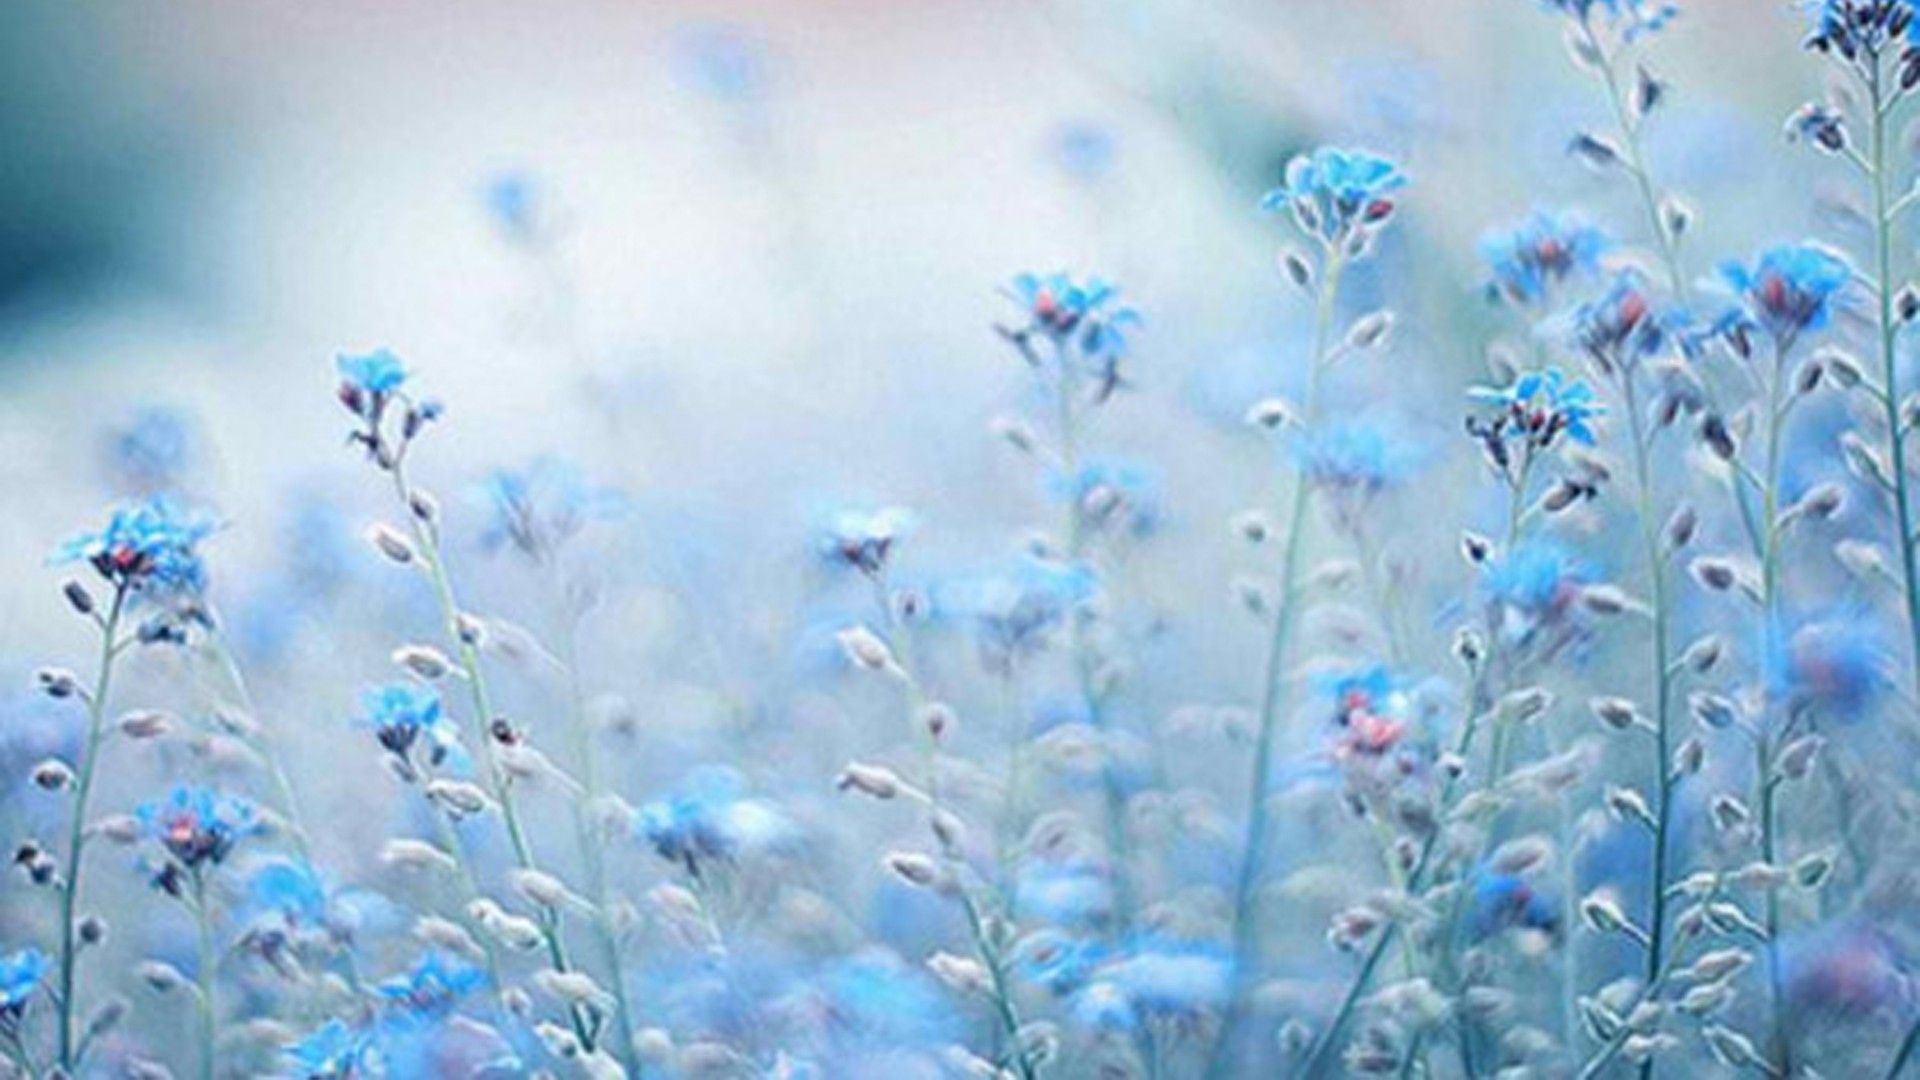 Blue flowers in the wind wallpaper 1920x1080 blue flowers in the wind wallpaper 1920x1080 - Blue